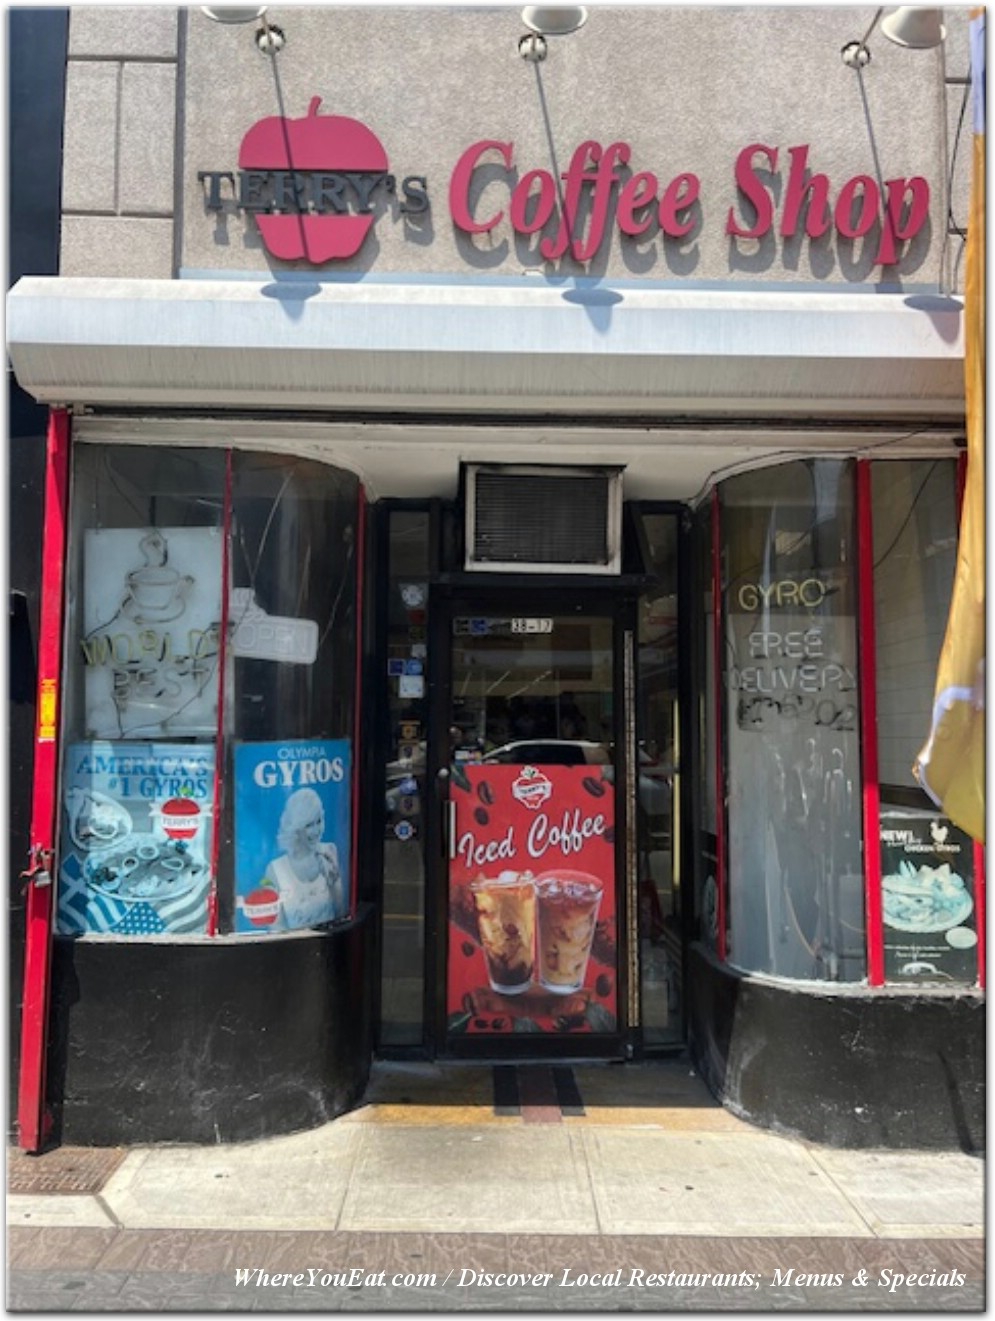 Terrys Coffee Shop